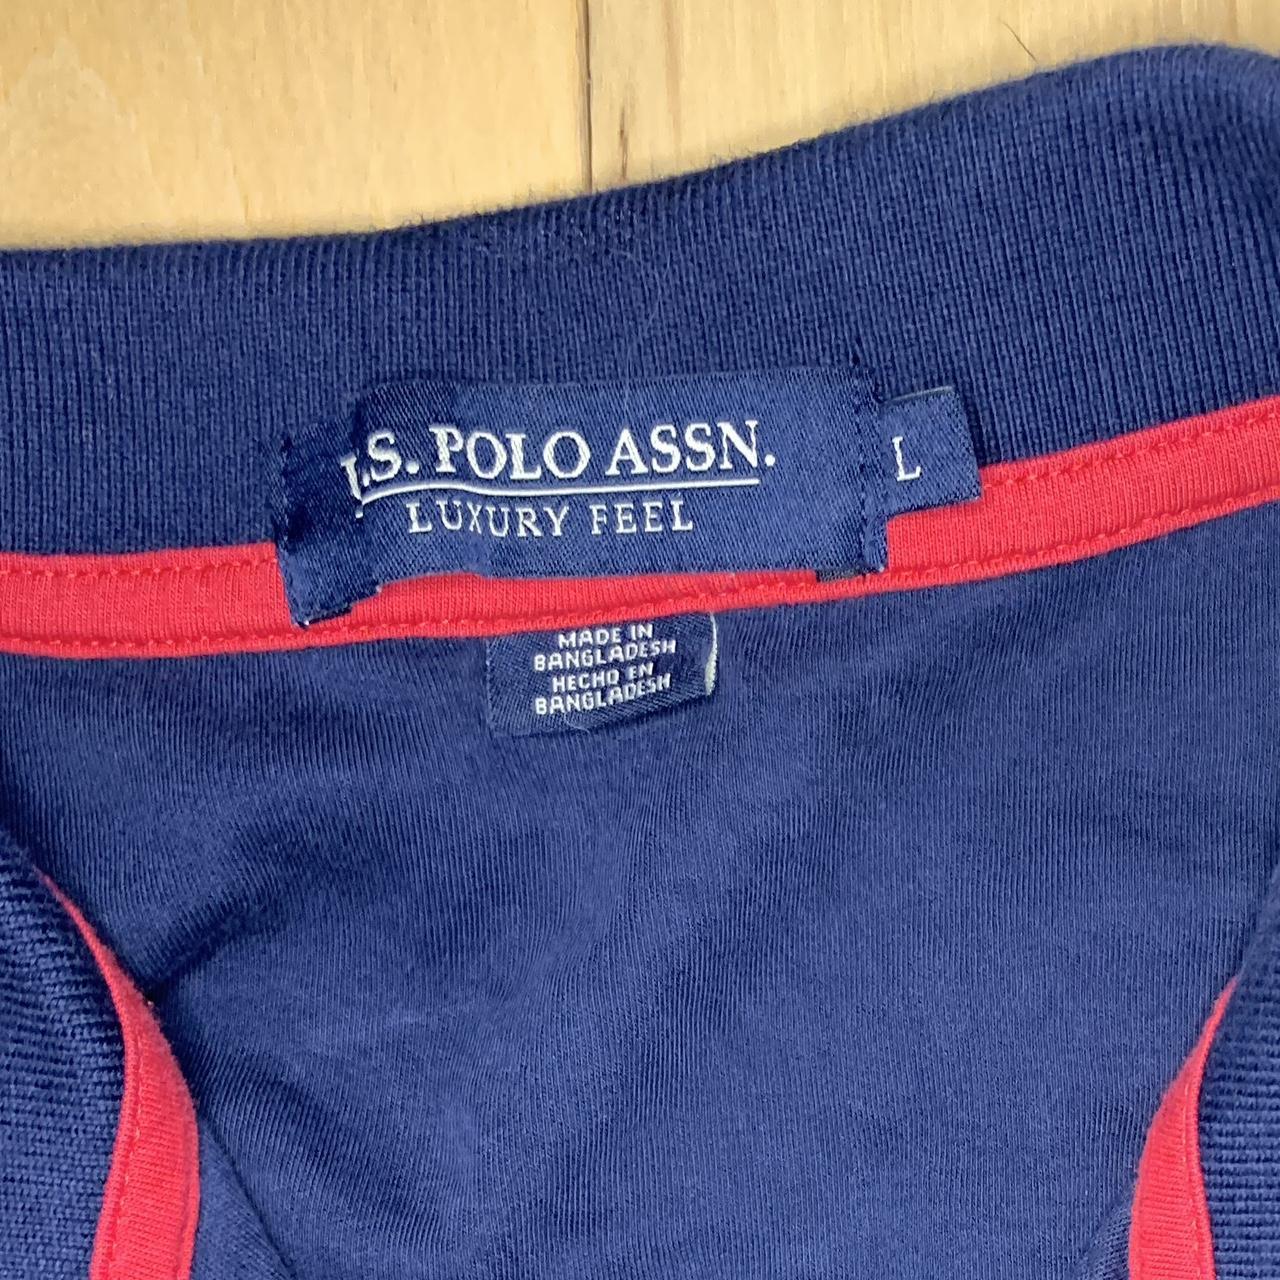 Polo Ralph Lauren Polo shirt Navy blue/ red... - Depop